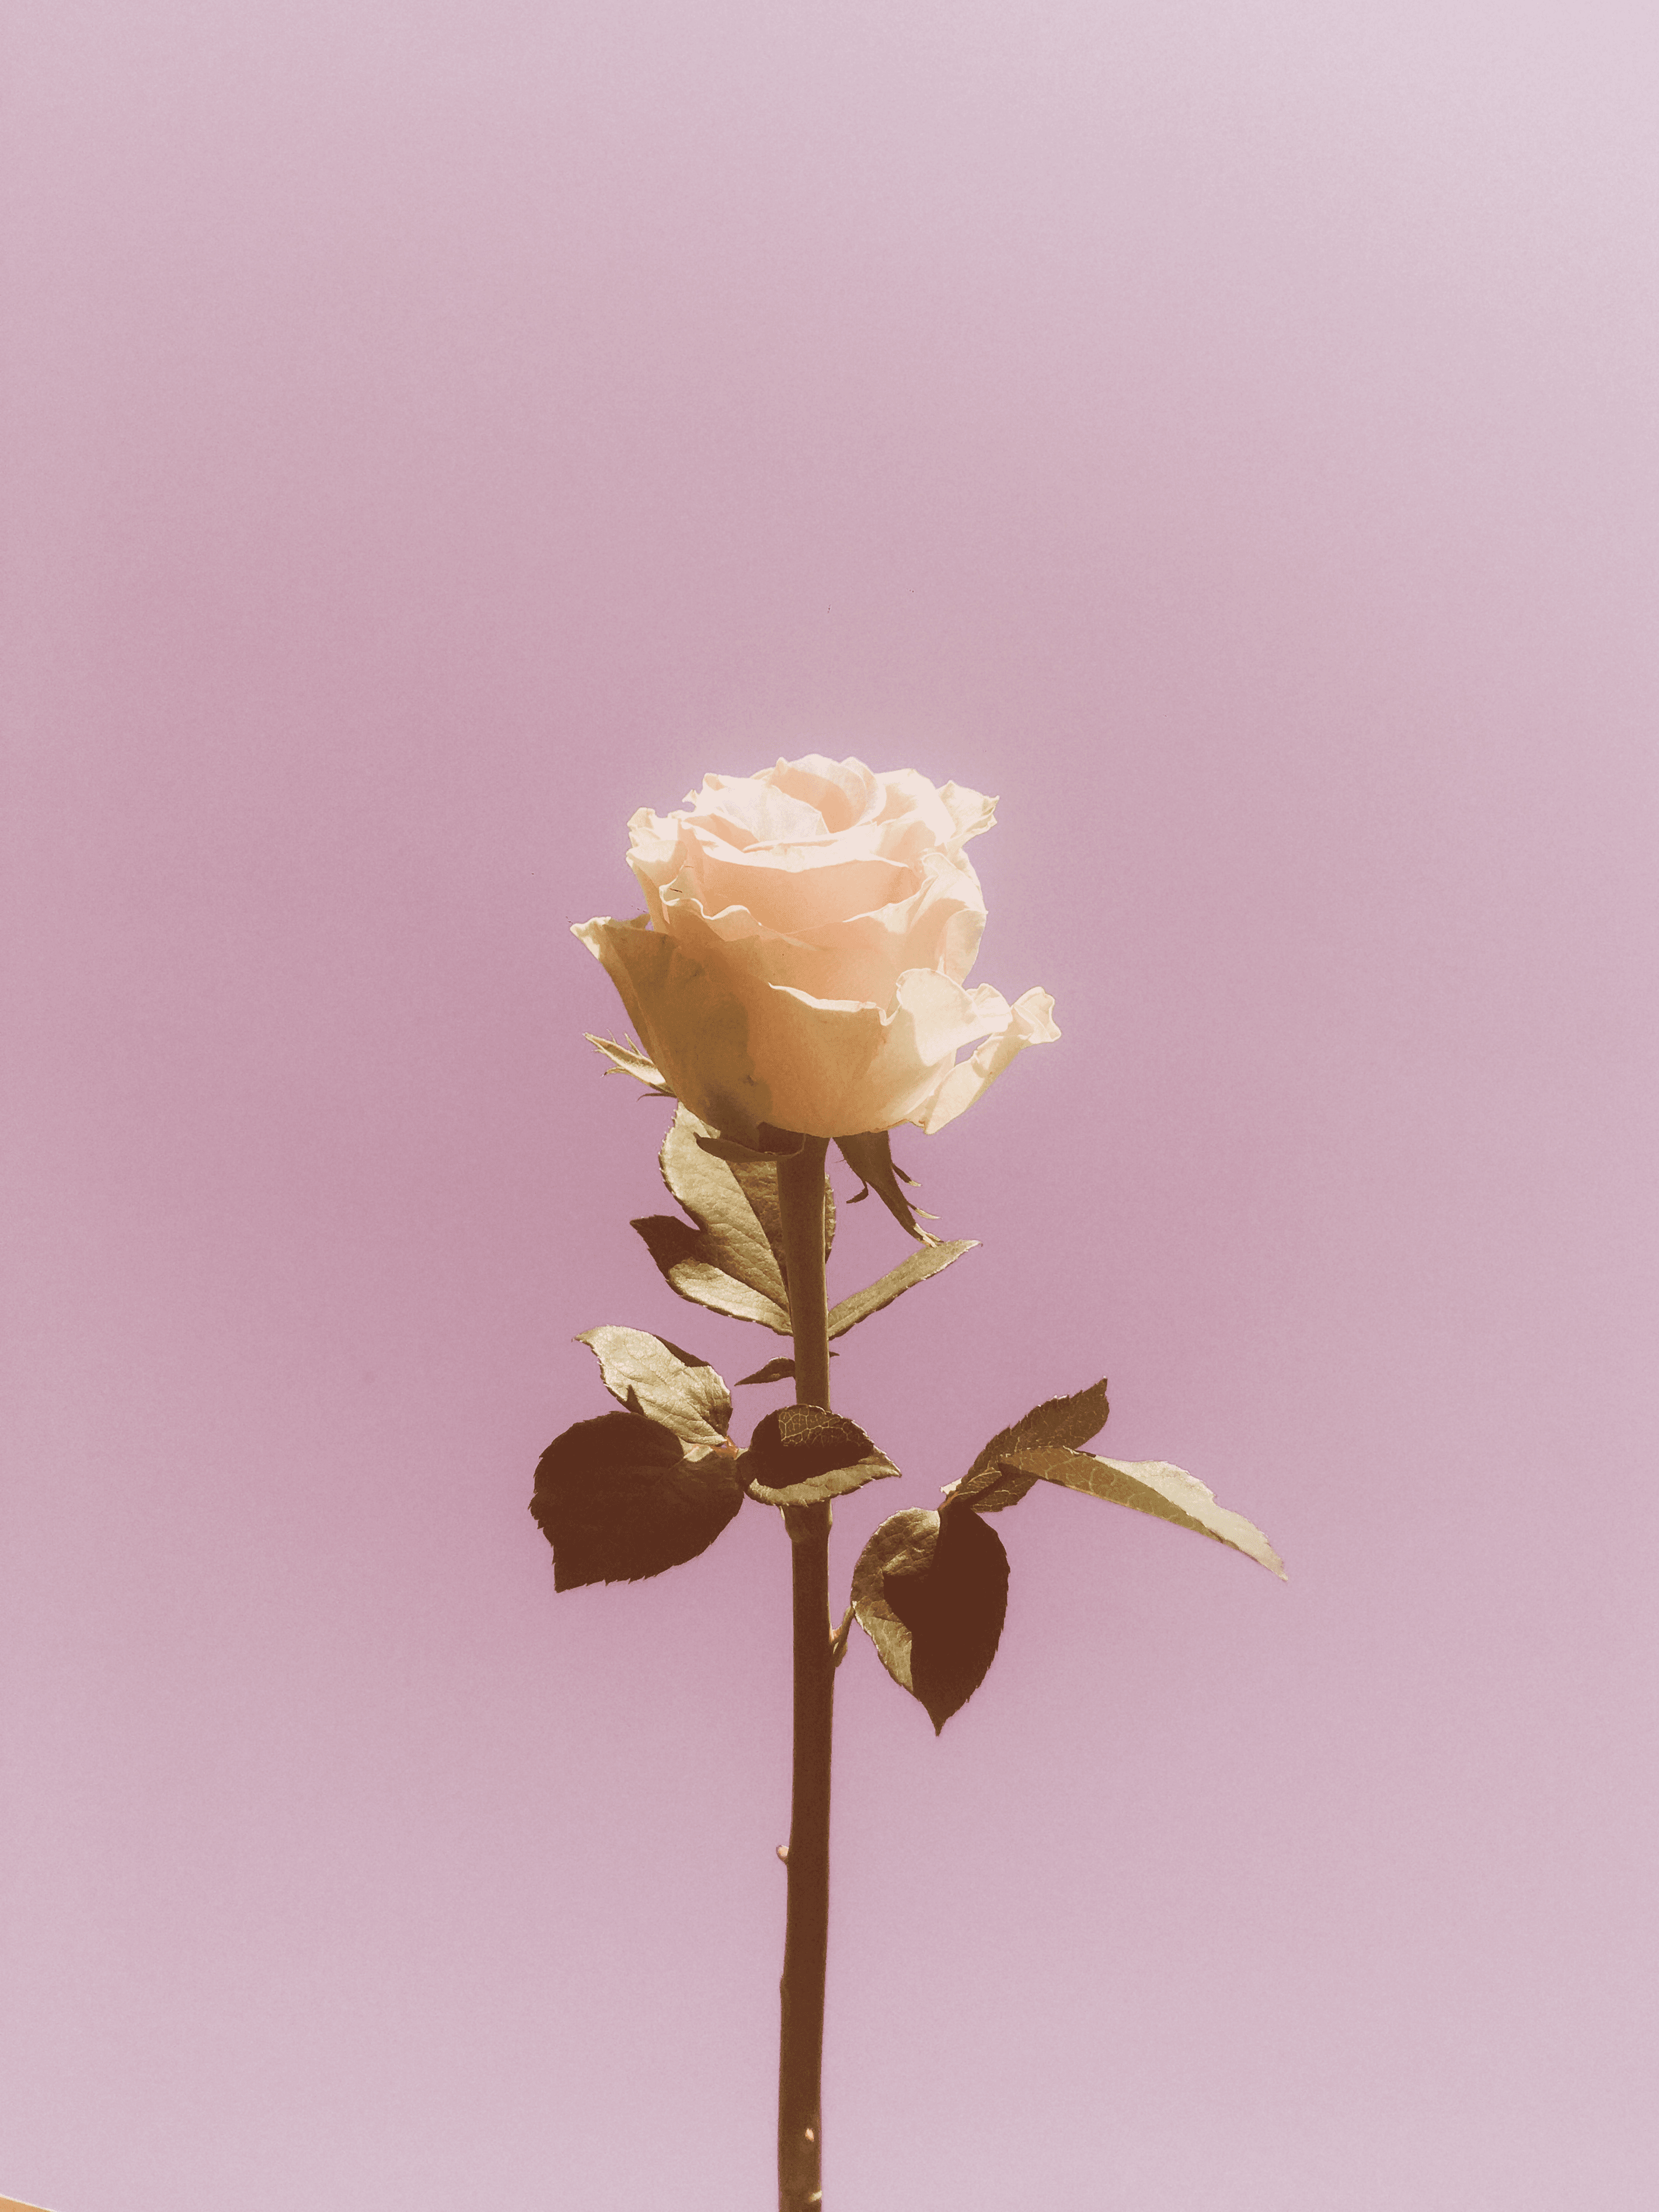 Urban Rose #2